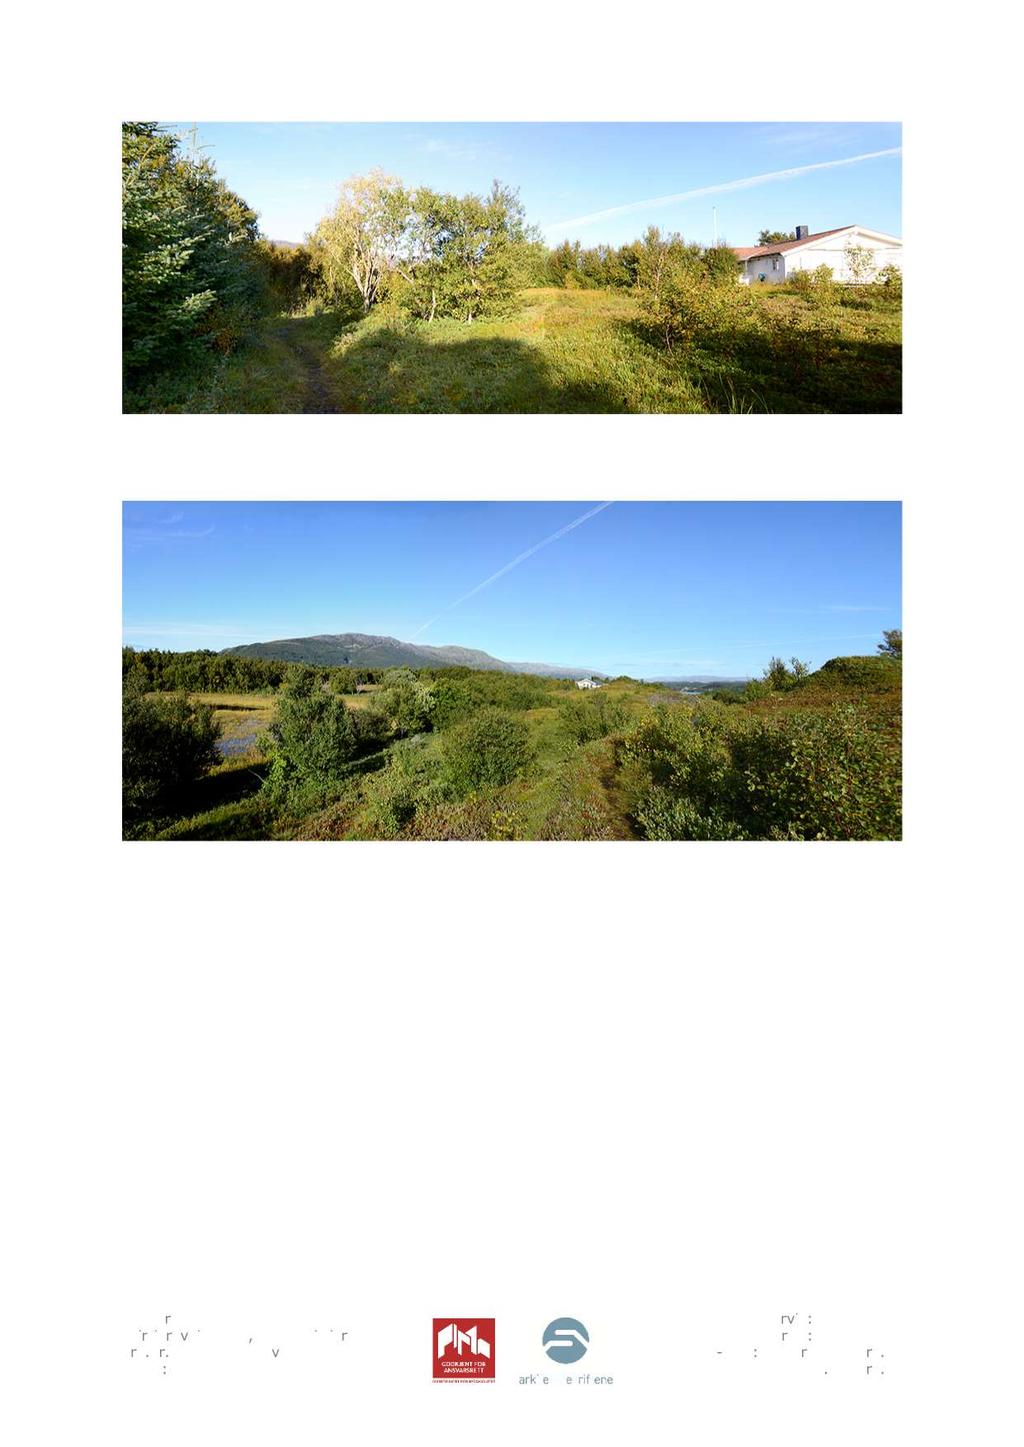 Bilde 8. Til venstre i bildet ses turstien som etter slitasjen å dømme er i stor bruk. Til høyre i bildet ses den ene av hyttene. Bilde 9.